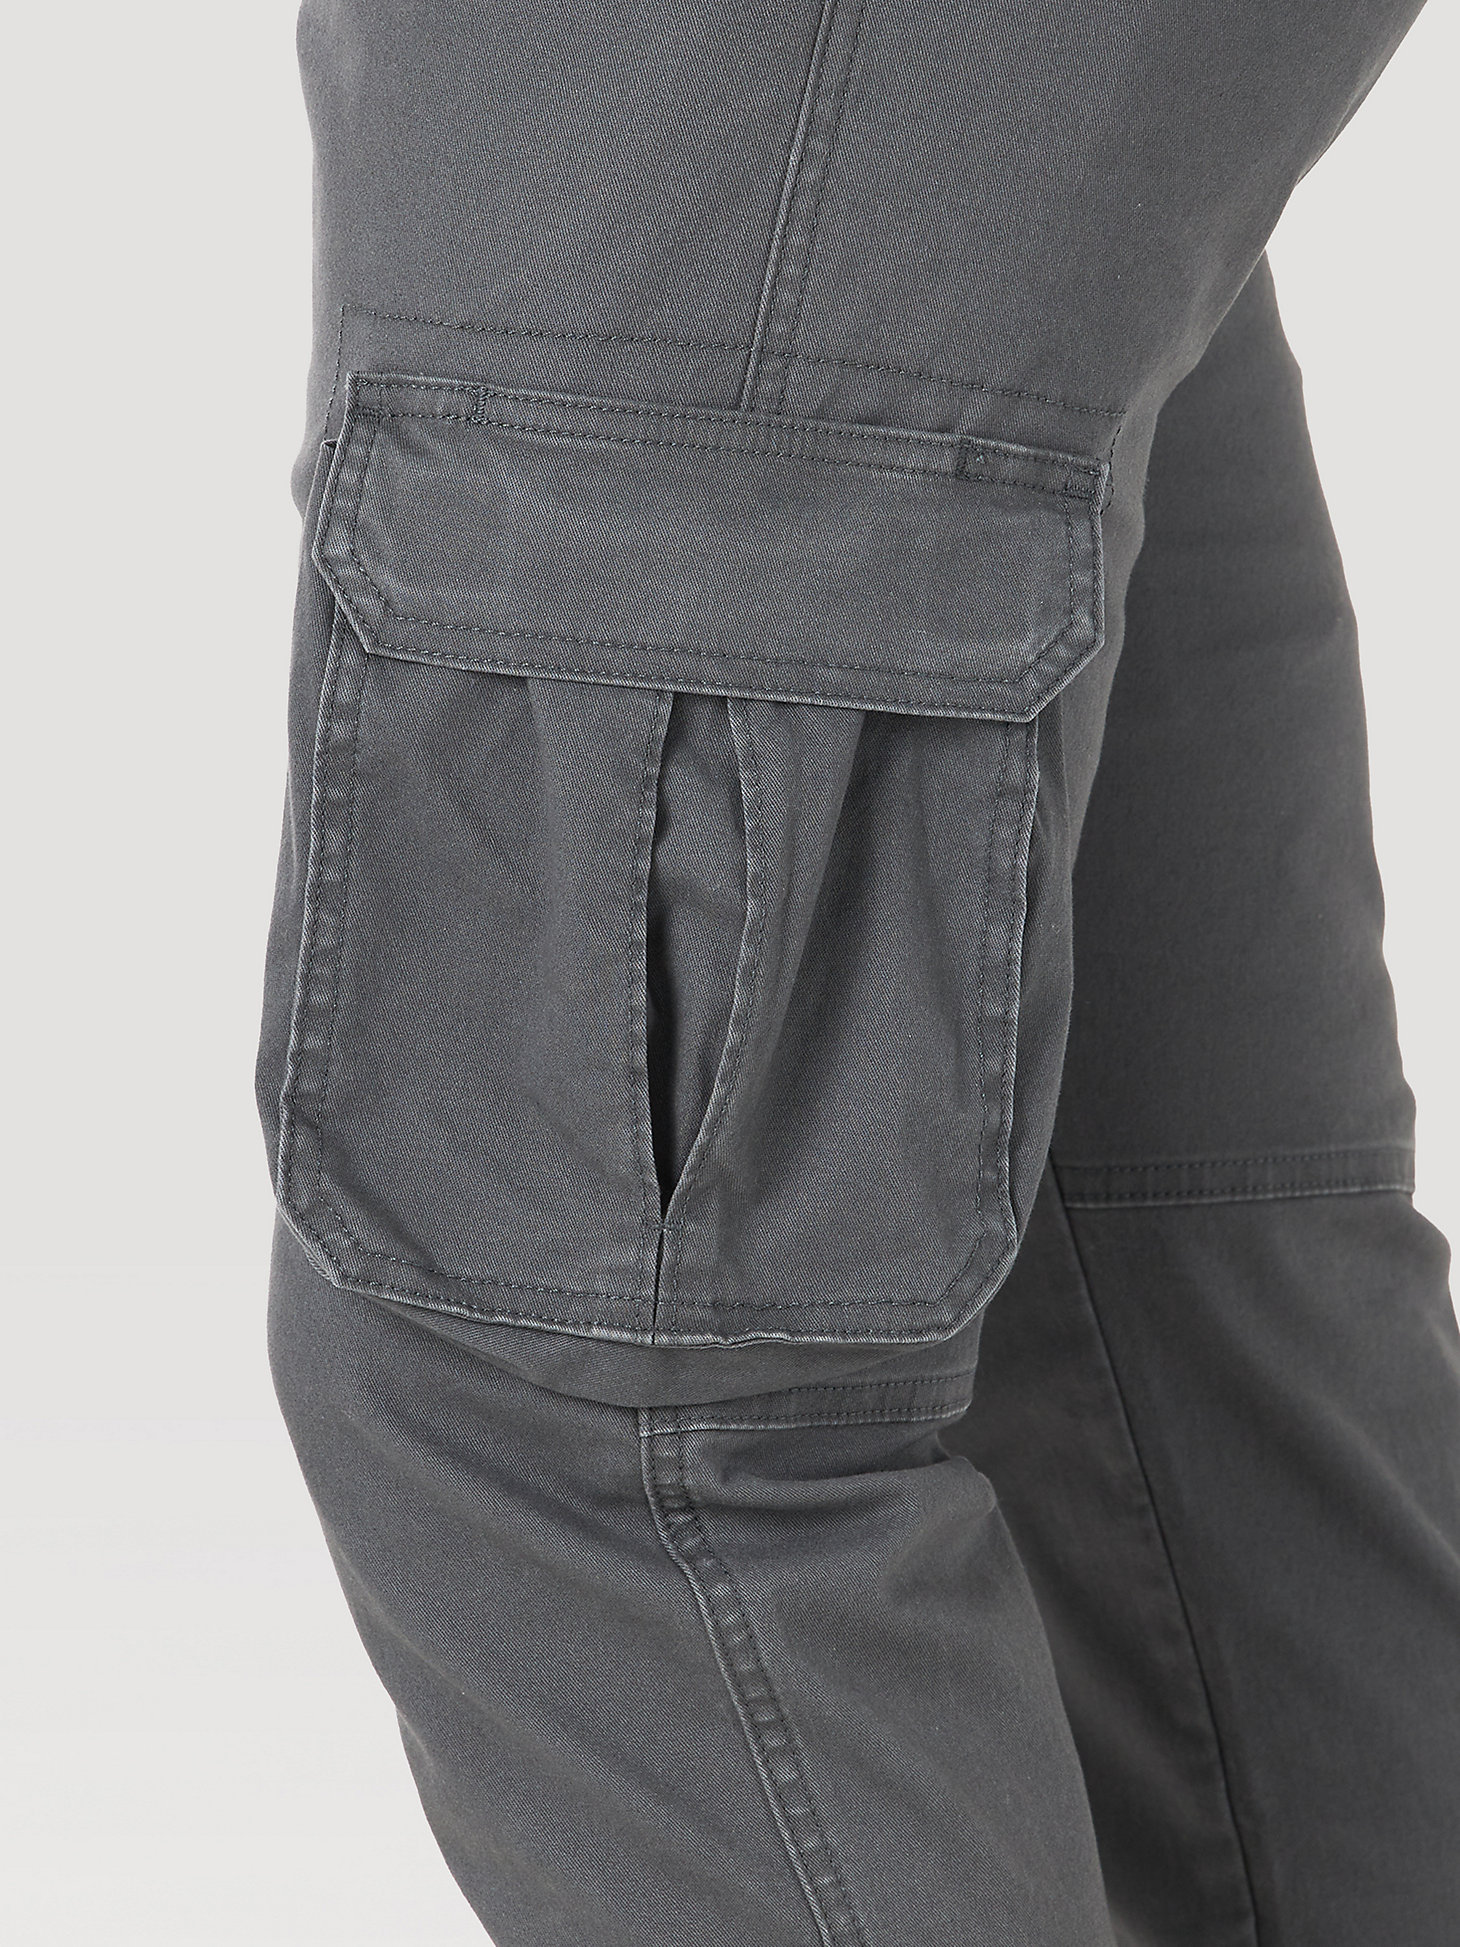 Men's Wrangler® Flex Tapered Cargo Pant in Asphalt alternative view 6